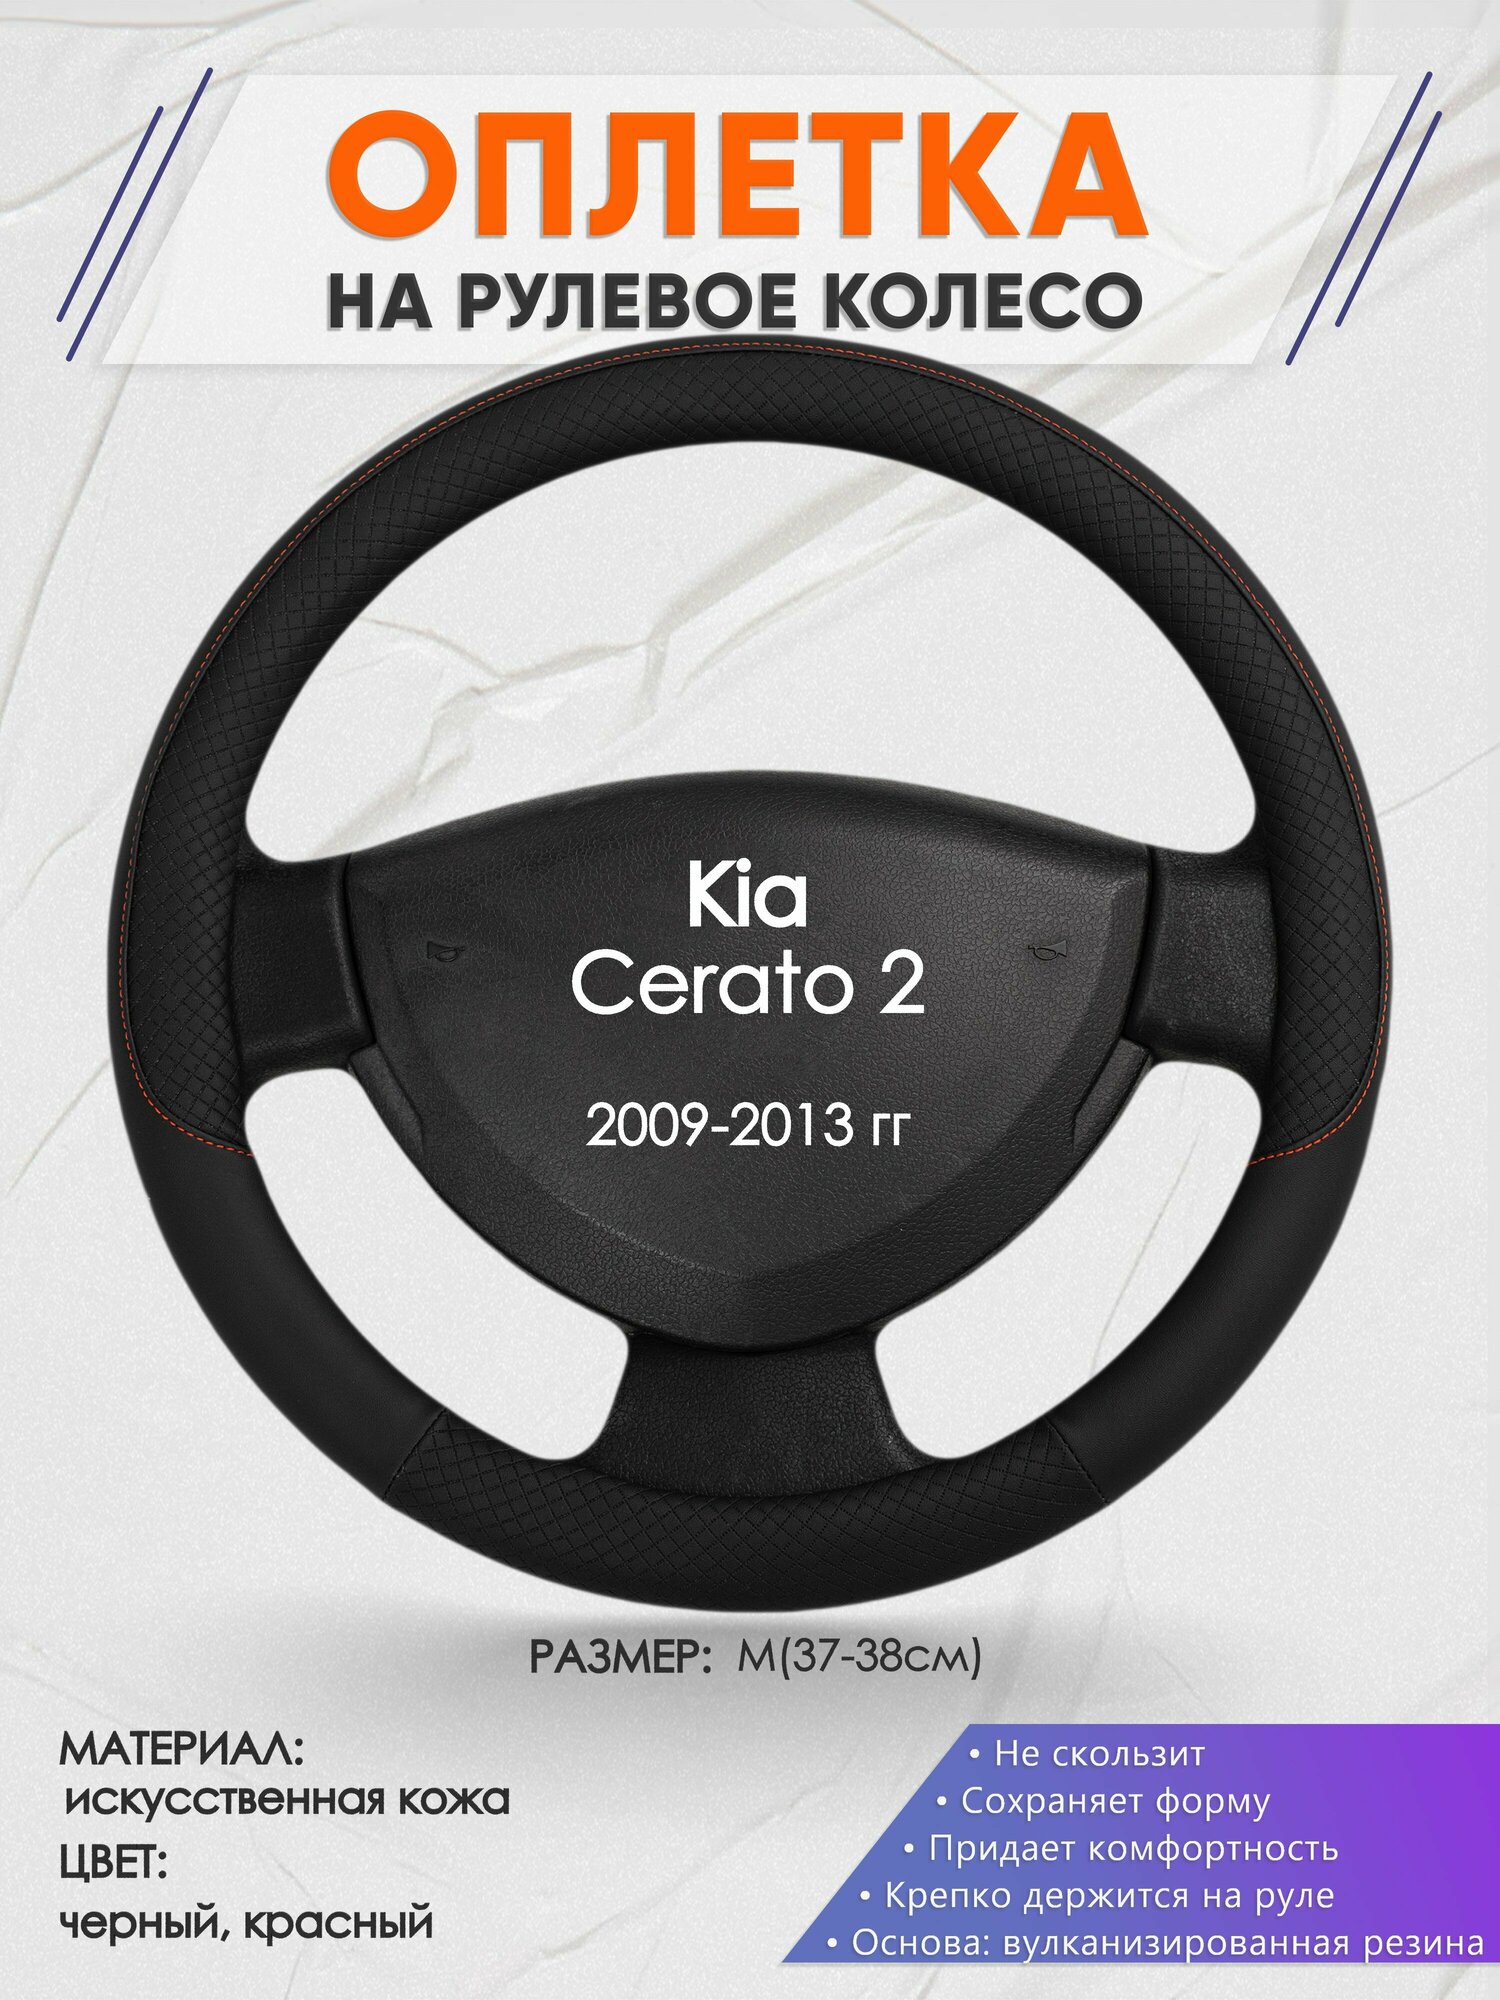 Оплетка на руль для Kia Cerato 2(Киа Церато 2) 2009-2013, M(37-38см), Искусственная кожа 18